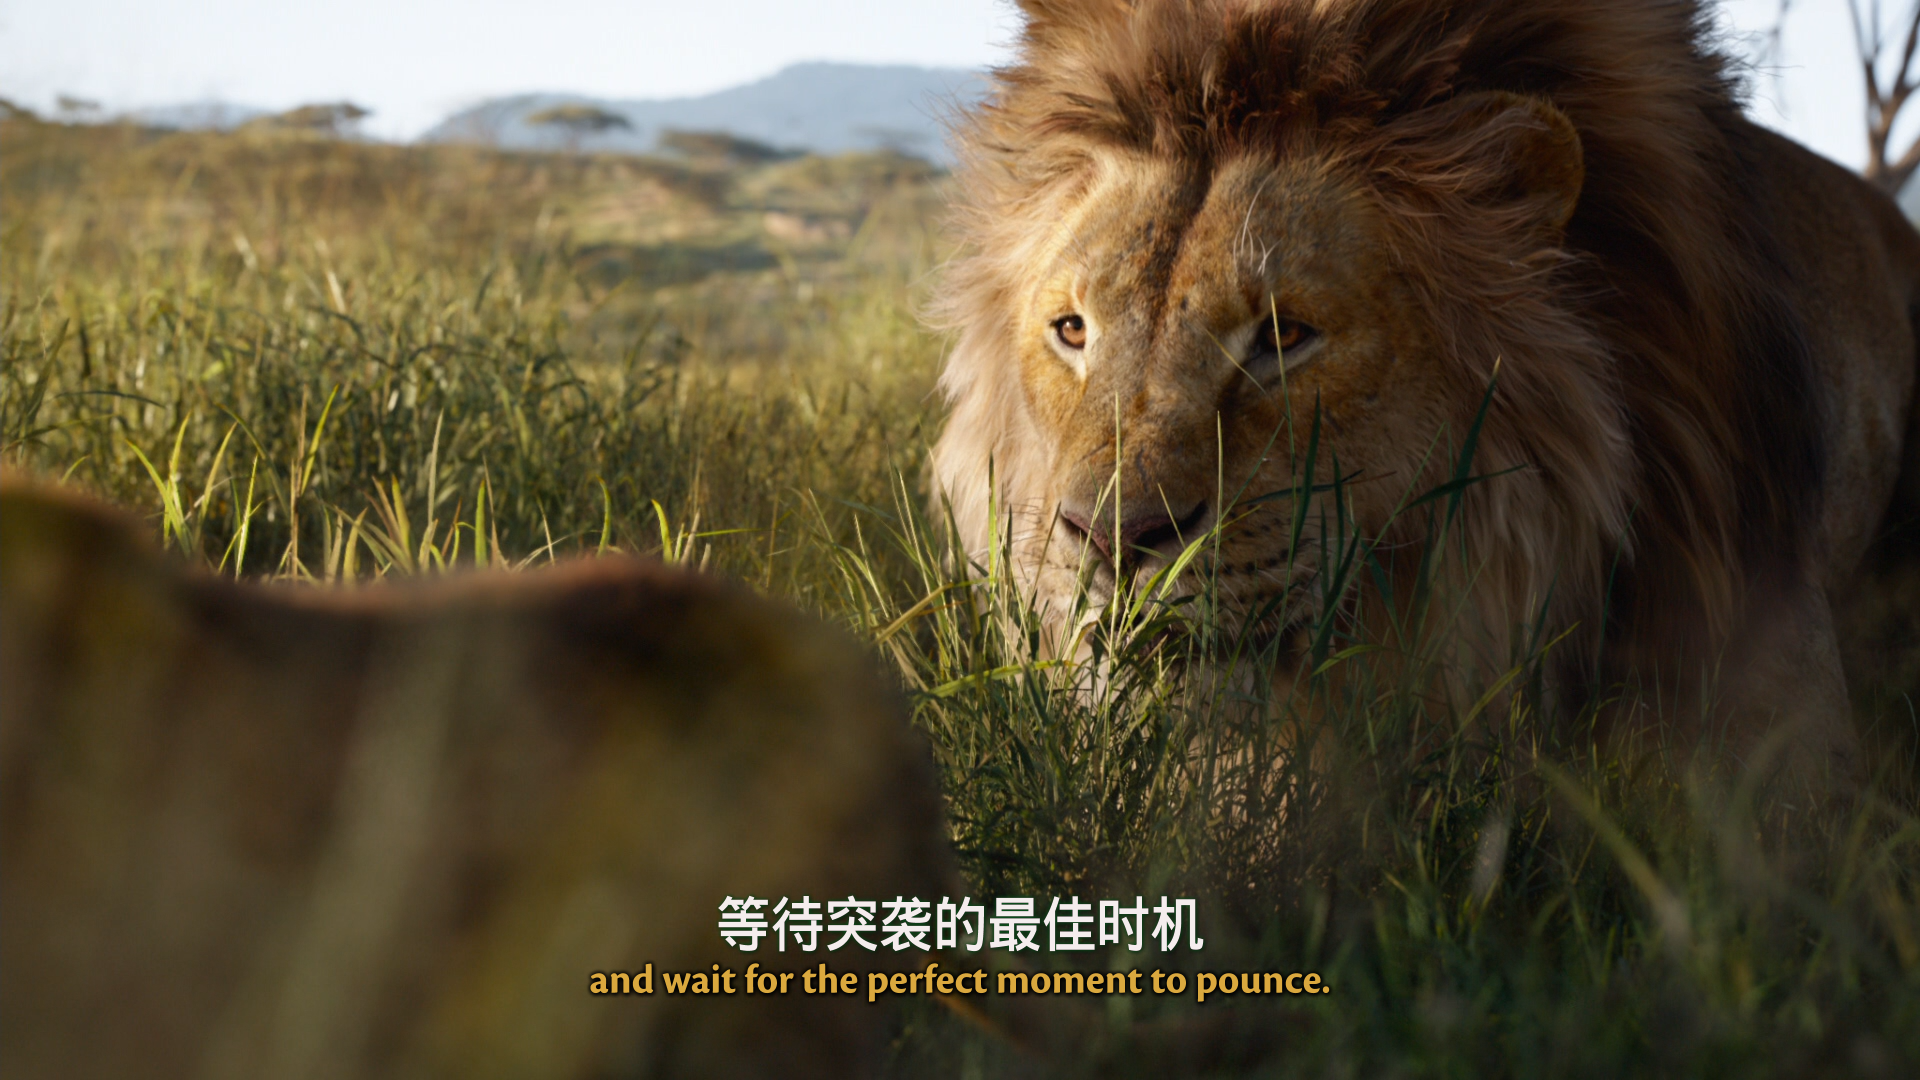 狮子王 / 狮子王真人版【原盘DIY台配国语/粤语 简繁/双语特效字幕】“修复蓝光机黑屏问题” The Lion King 2019 1080p V2 Blu-ray AVC DTS-HD MA 7.1-Thor@HDSky[42.52 GB]-17.png